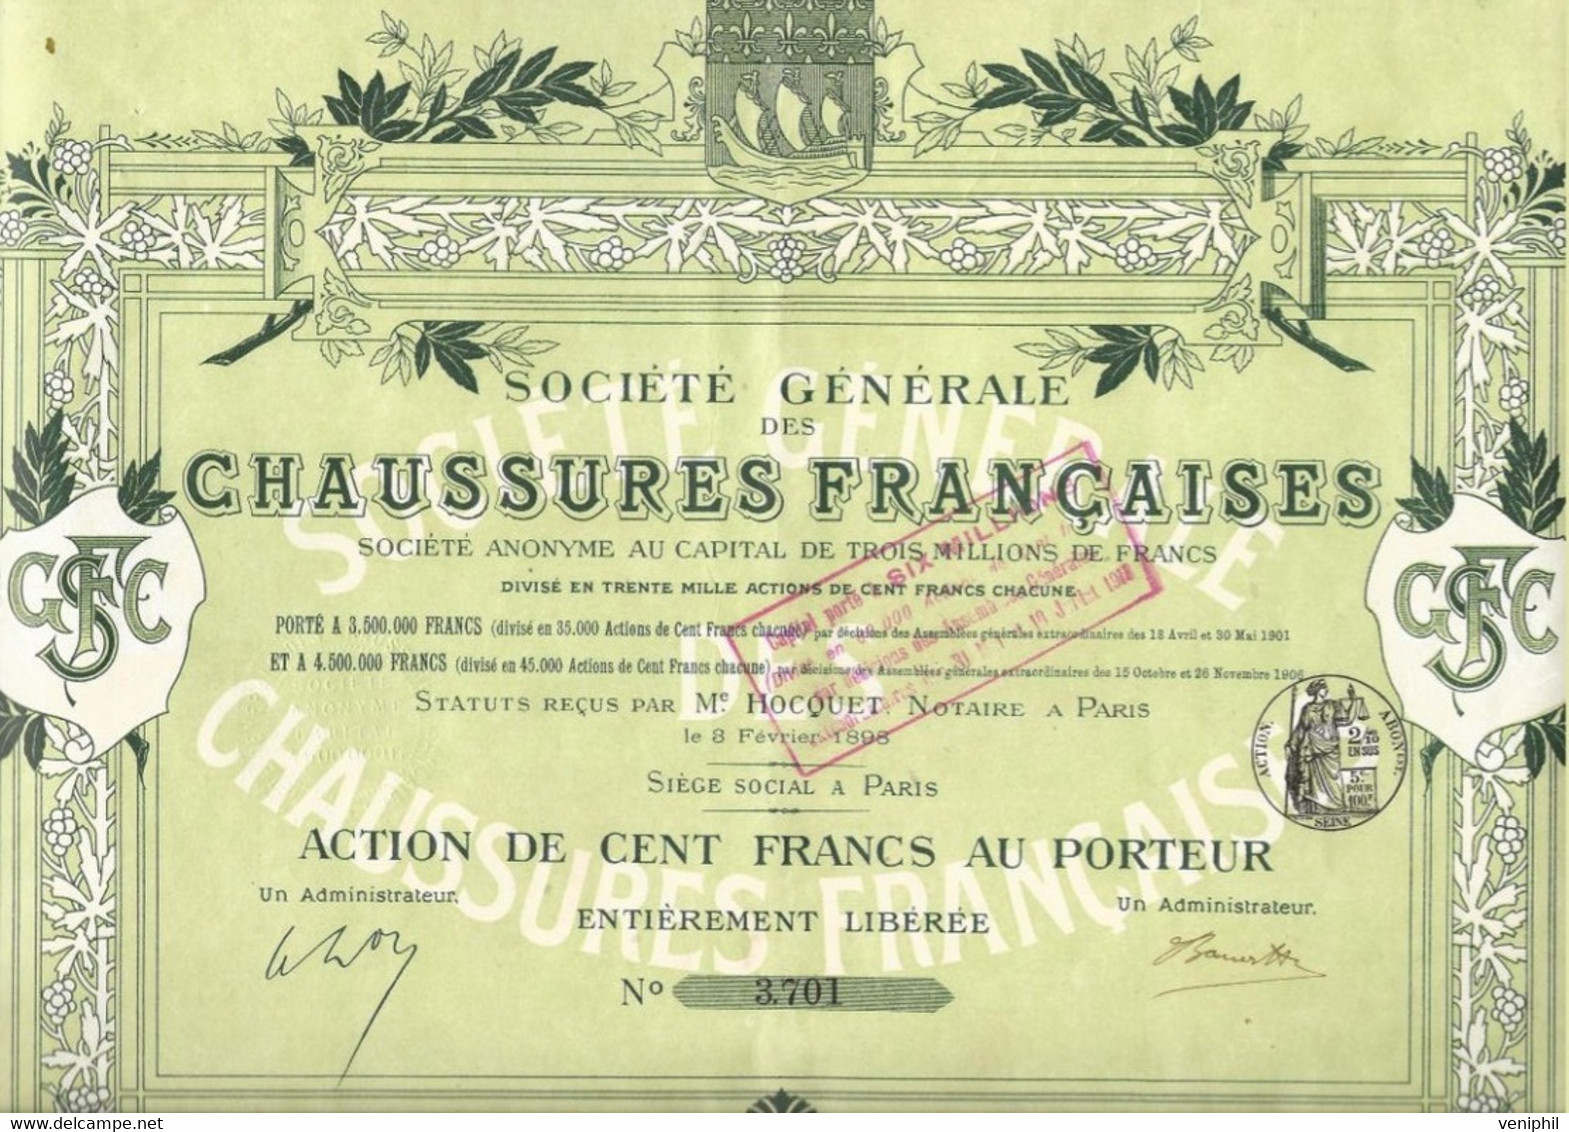 SOCIETE GENERALE DES CHAUSSURES FRANCAISES - ACTION DE CENT FRANCS - ANNEE 1898 - Textil